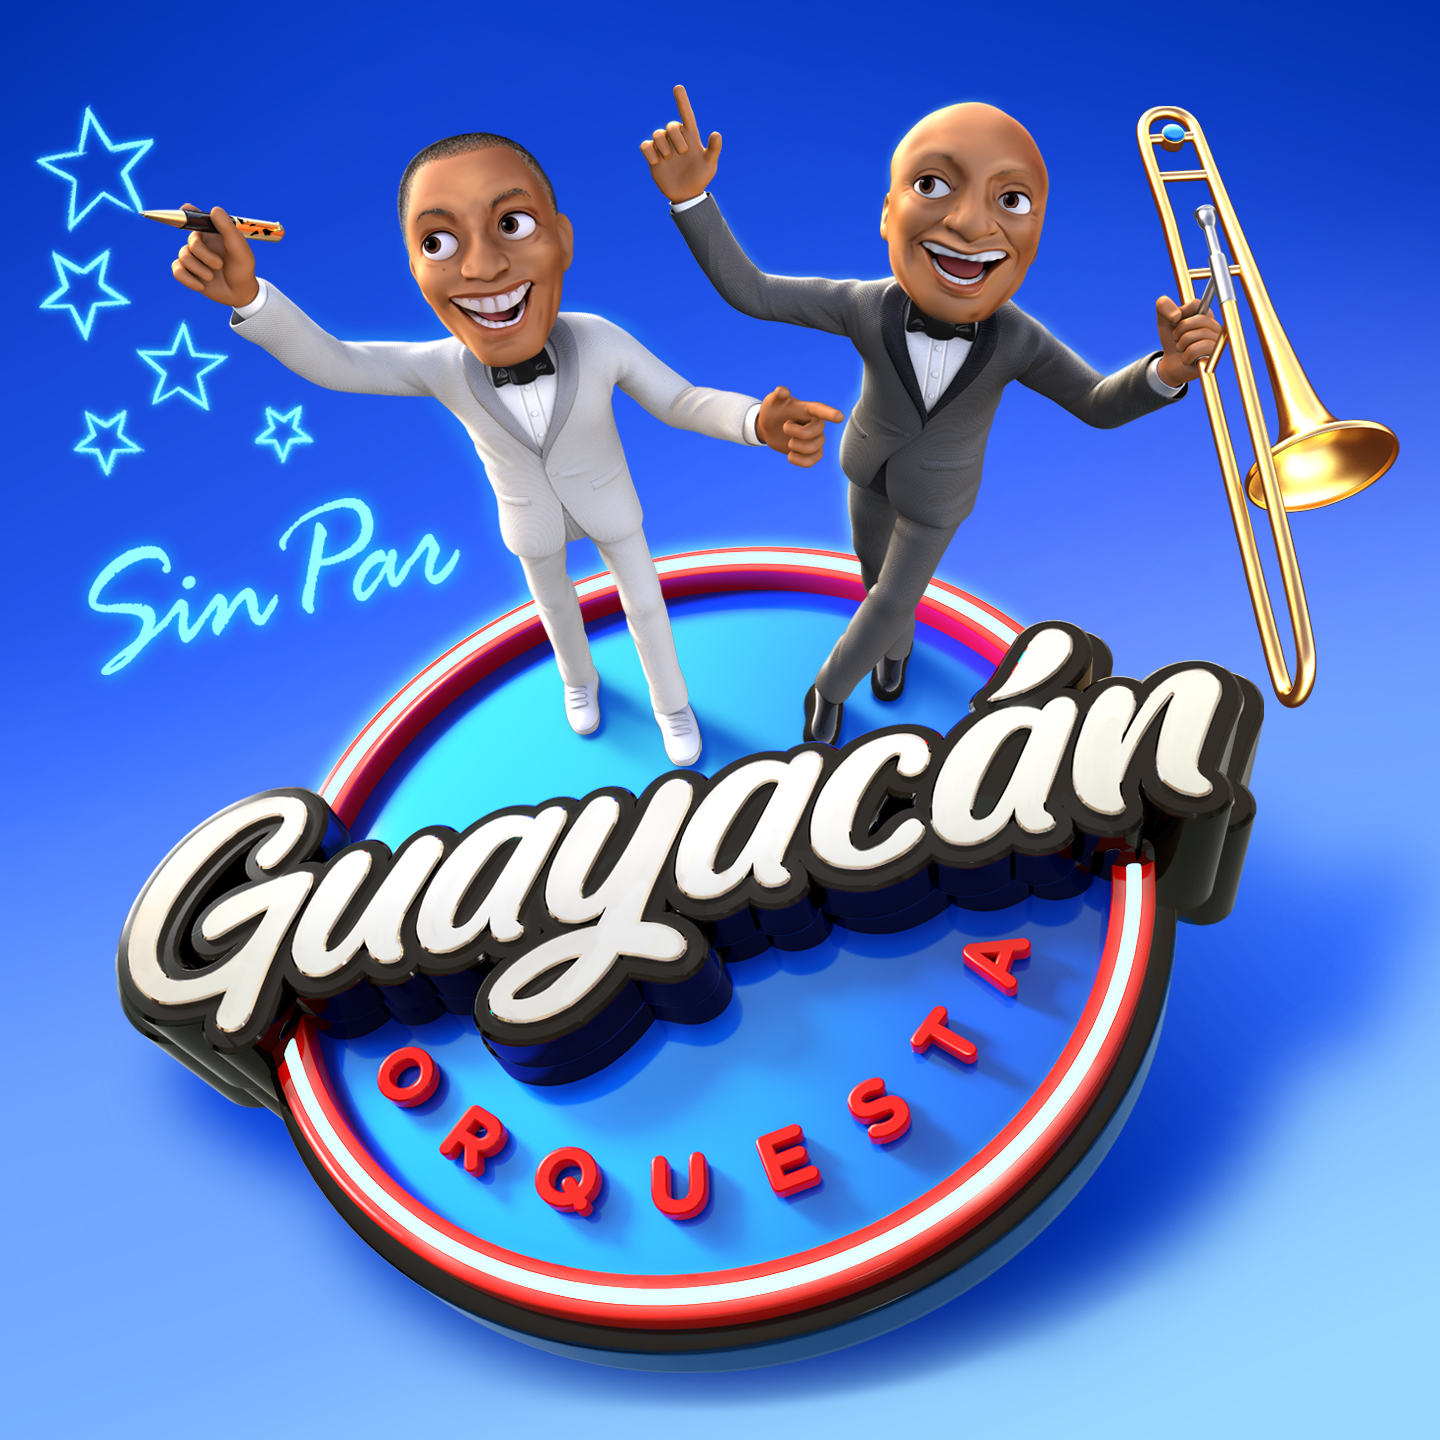 Guayacán Orquesta estrena su álbum "Sin par", un proyecto musical que apunta muy alto en el mundo de la salsa